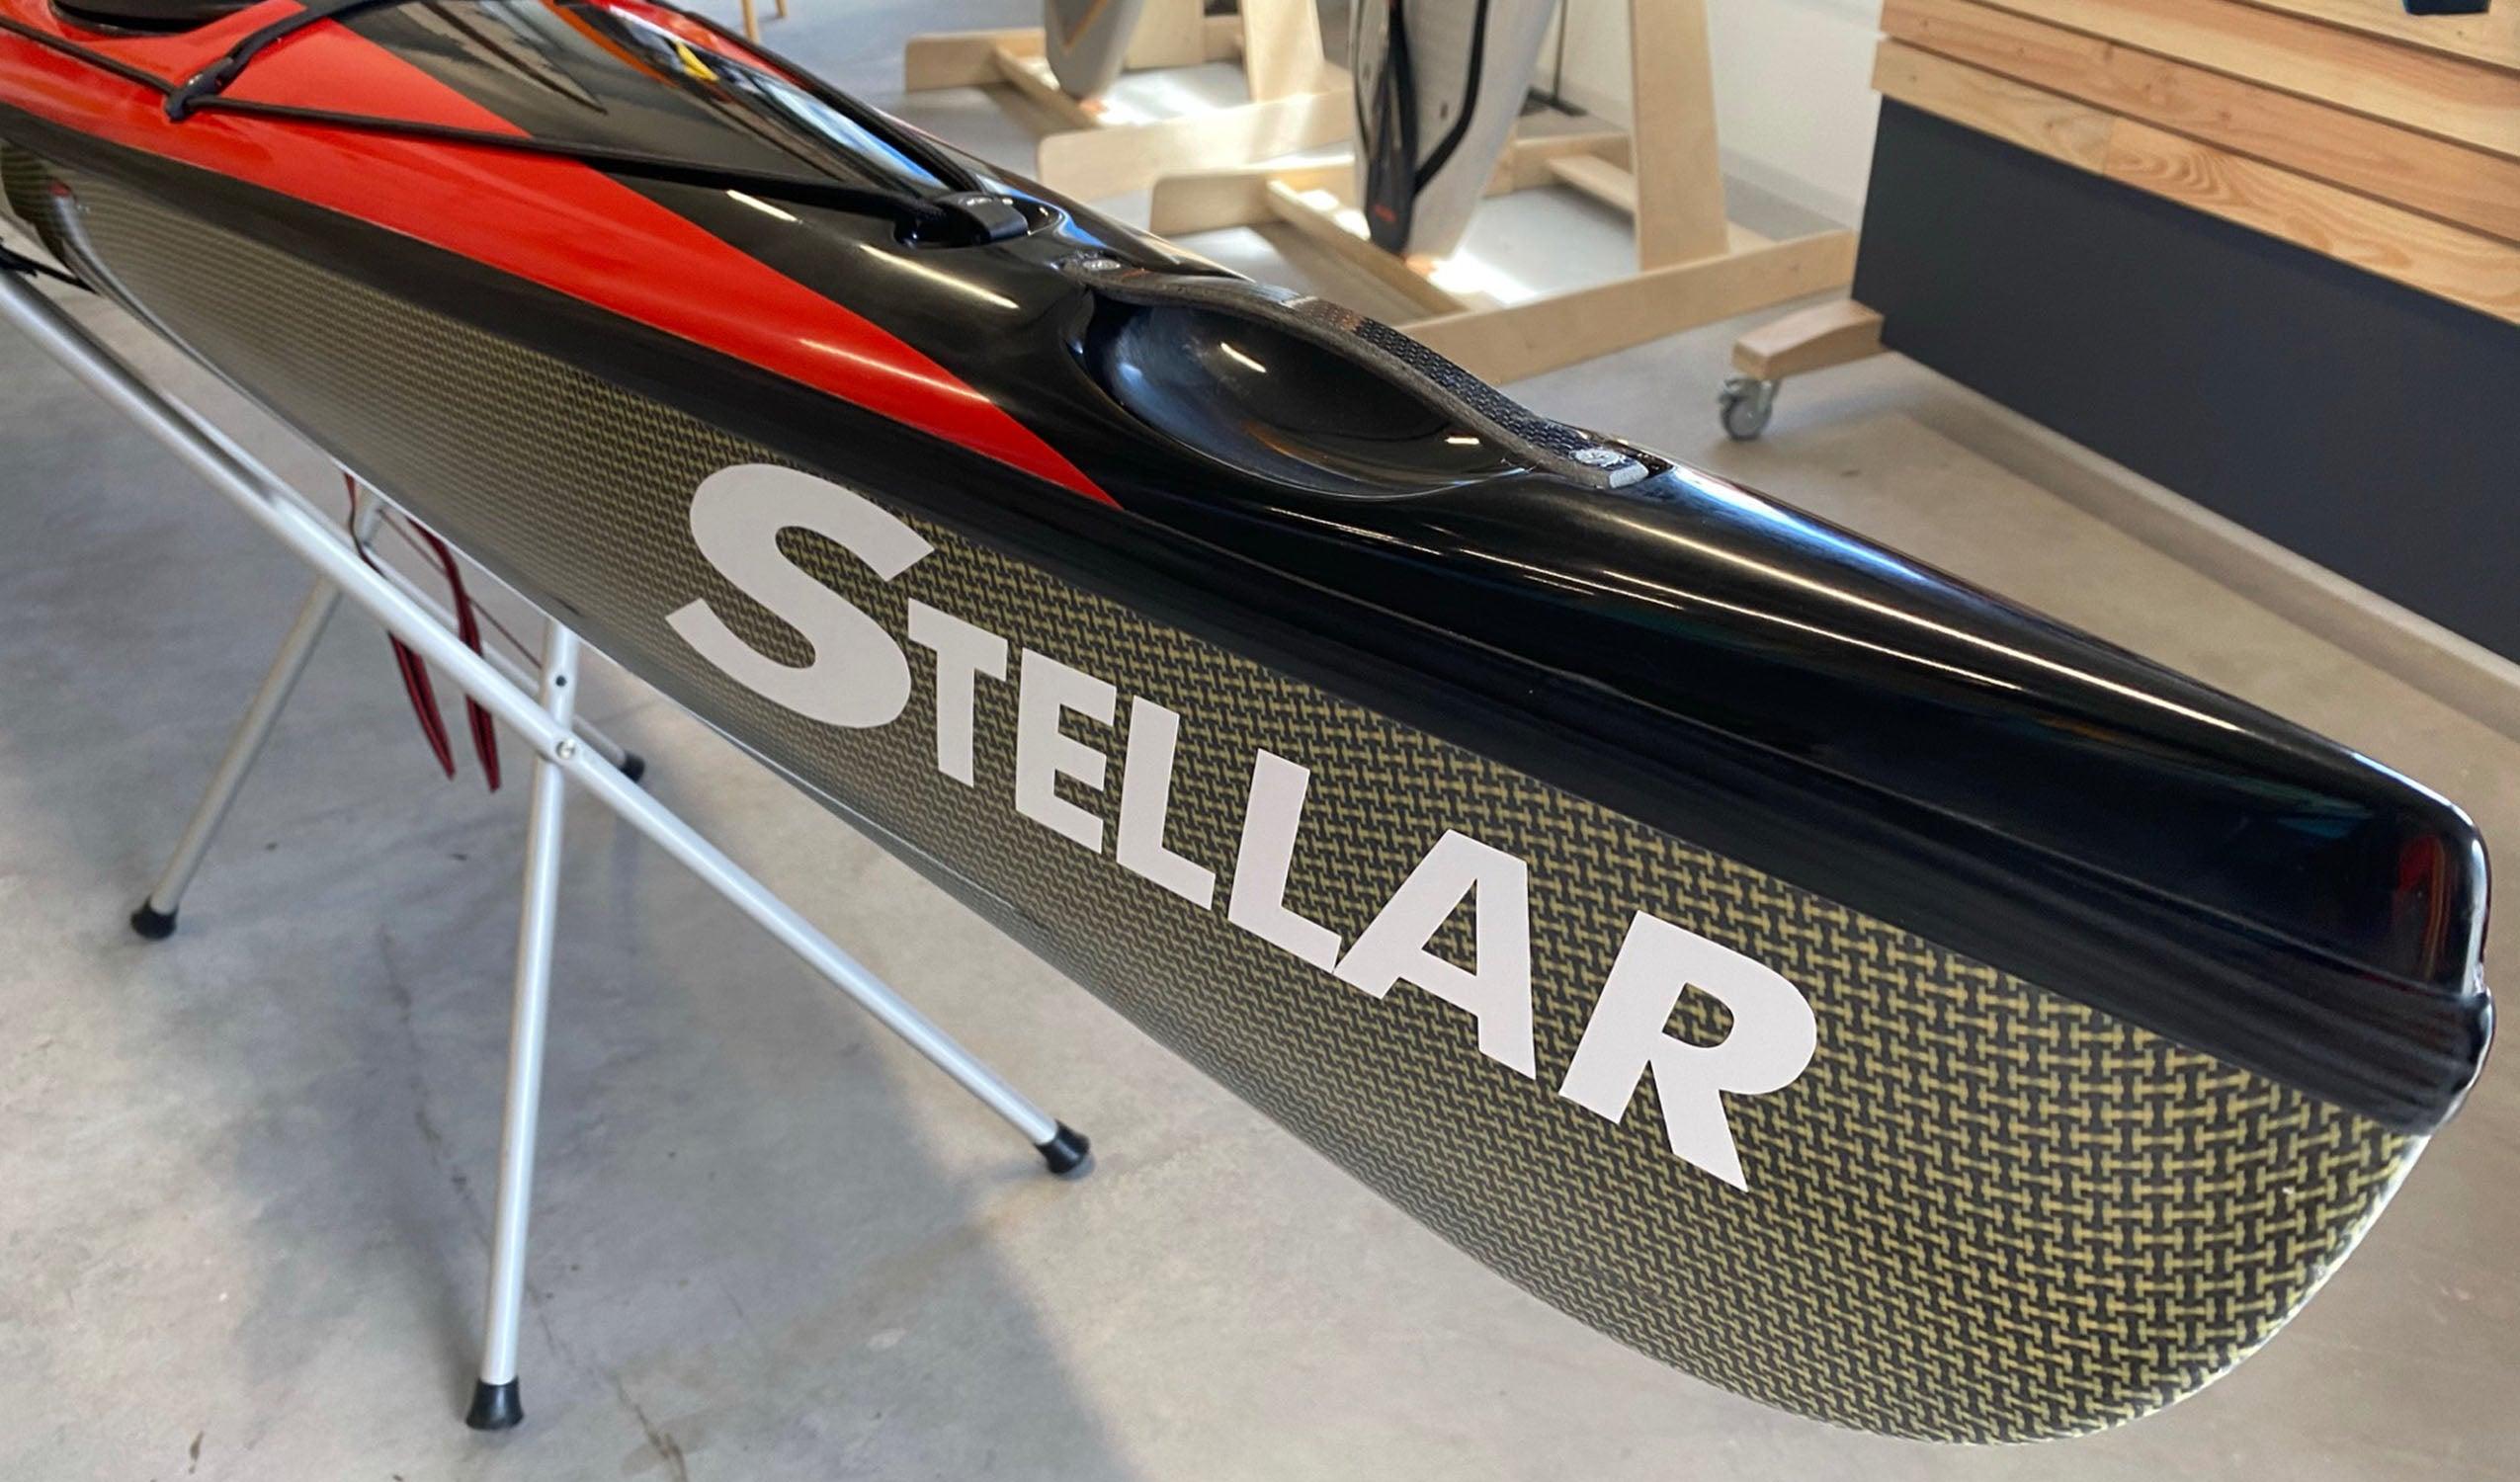 Produktbild von Kajak " S16 G2 Multisport-rot schwarz " der Marke STELLAR Lightweight für 3190.00 €. Erhältlich online bei Lite Venture ( www.liteventure.de )